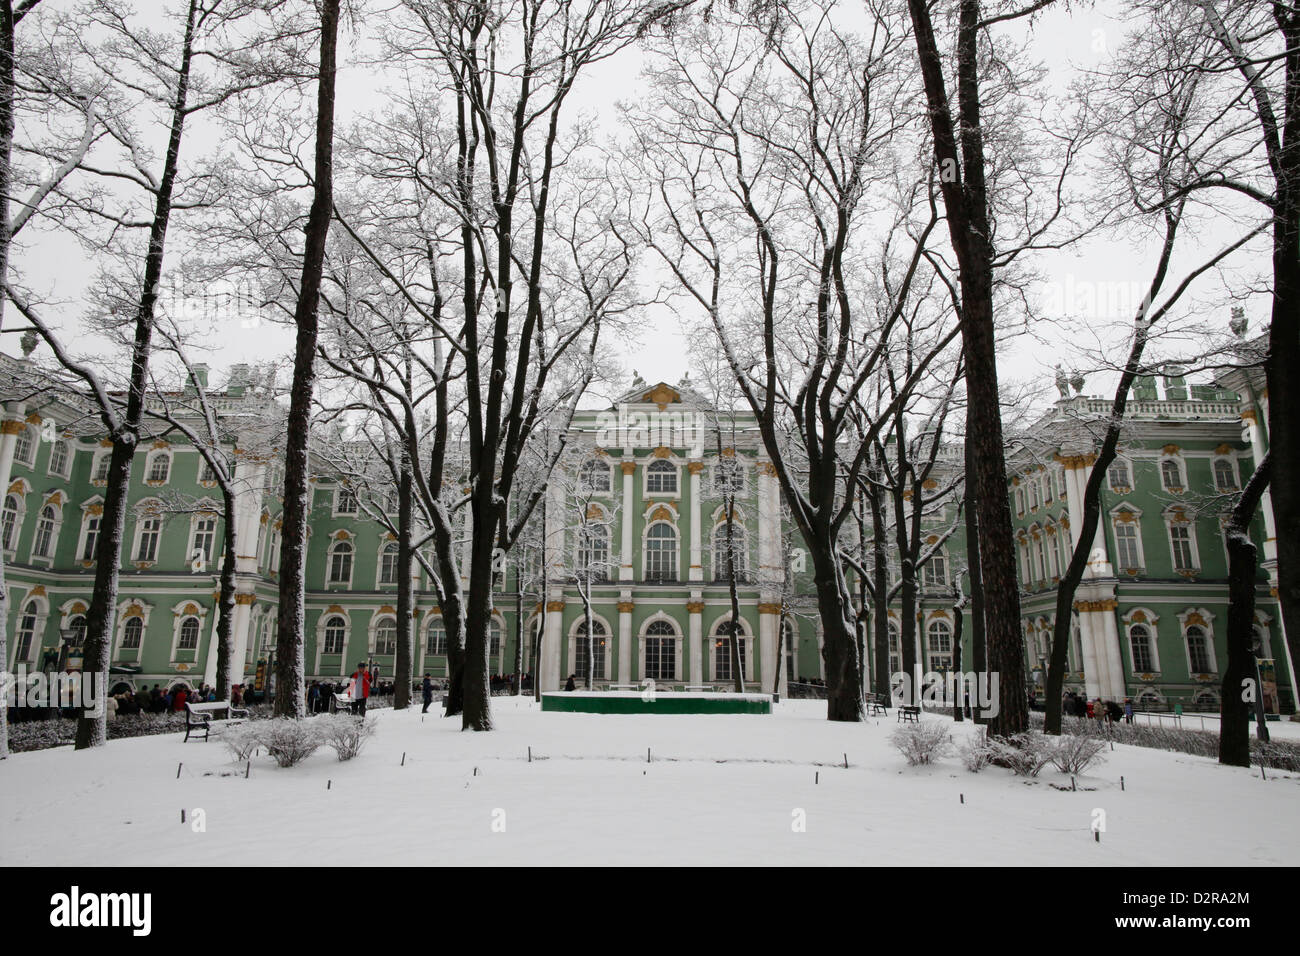 Musée de l'ermitage, UNESCO World Heritage Site, Saint-Pétersbourg, Russie, Europe Banque D'Images